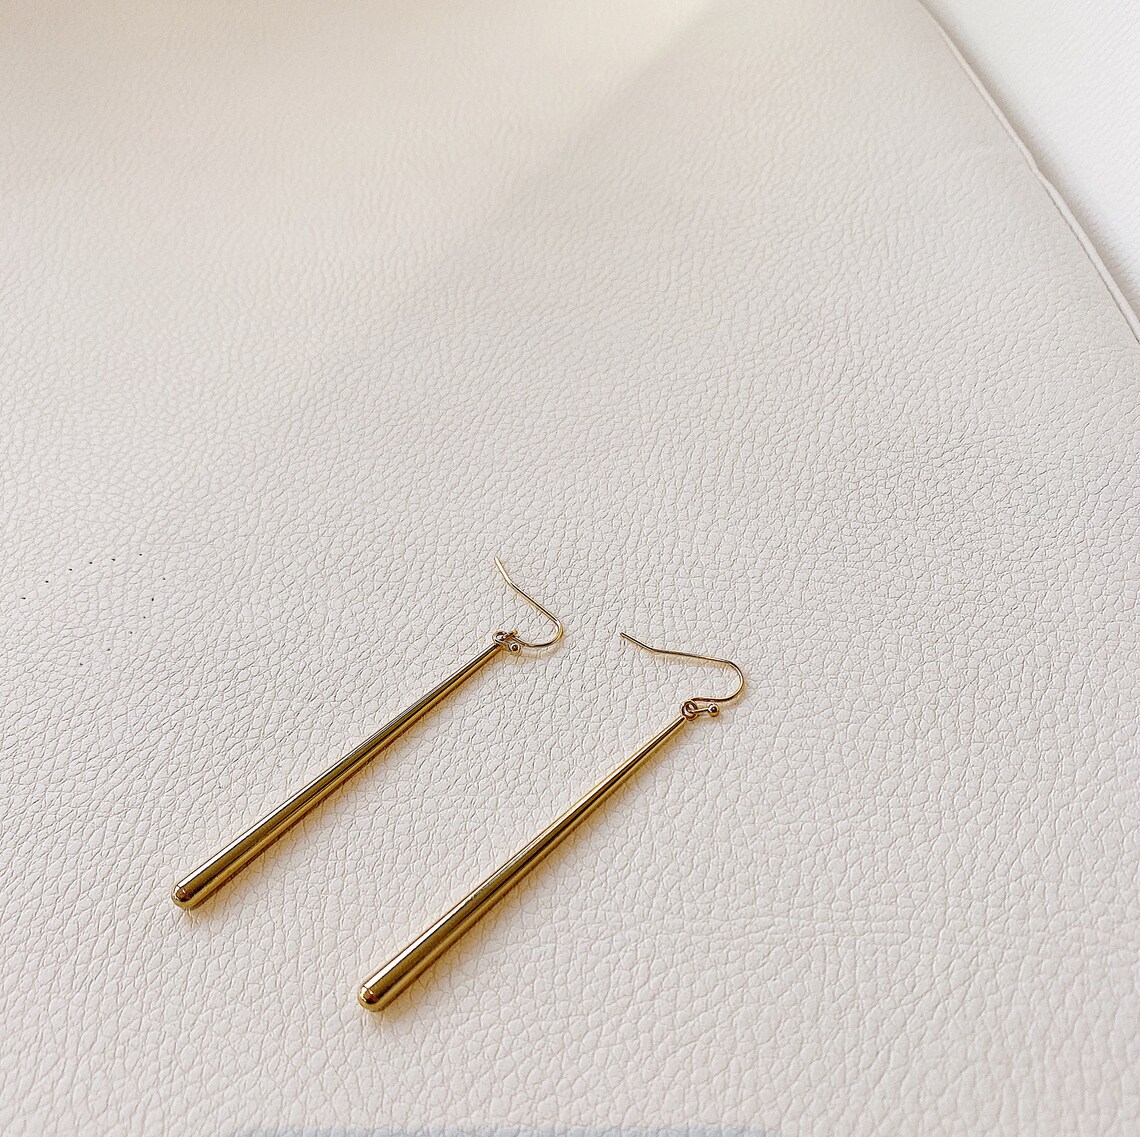 Simple Long Gold Earrings 60mm Gold Earrings Long Dangle | Etsy